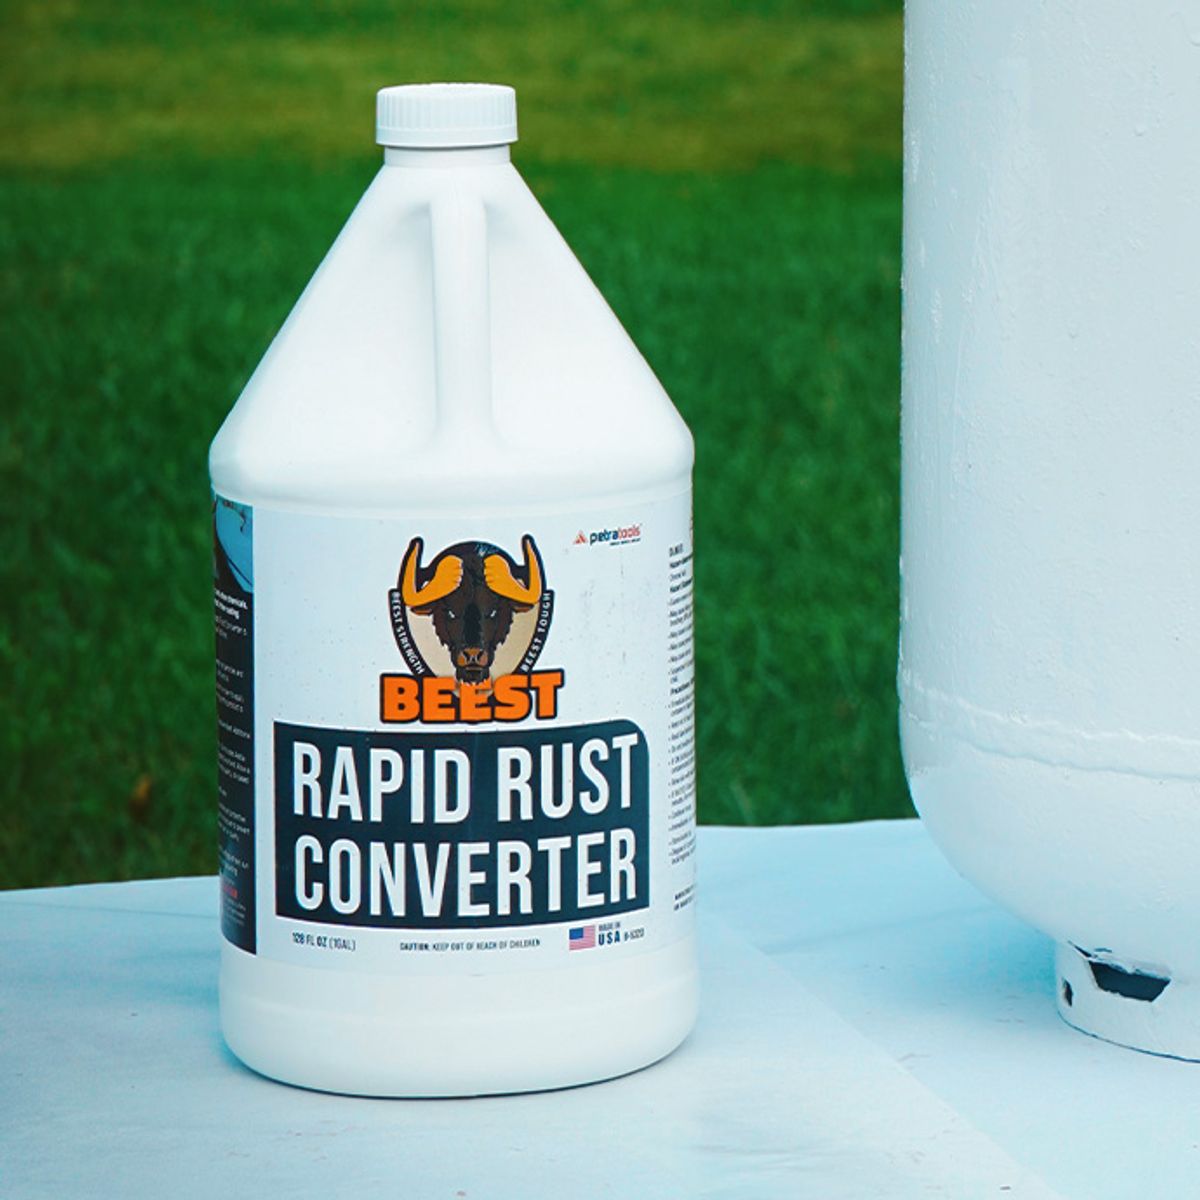 What's in BEEST Rapid Rust Converter? 